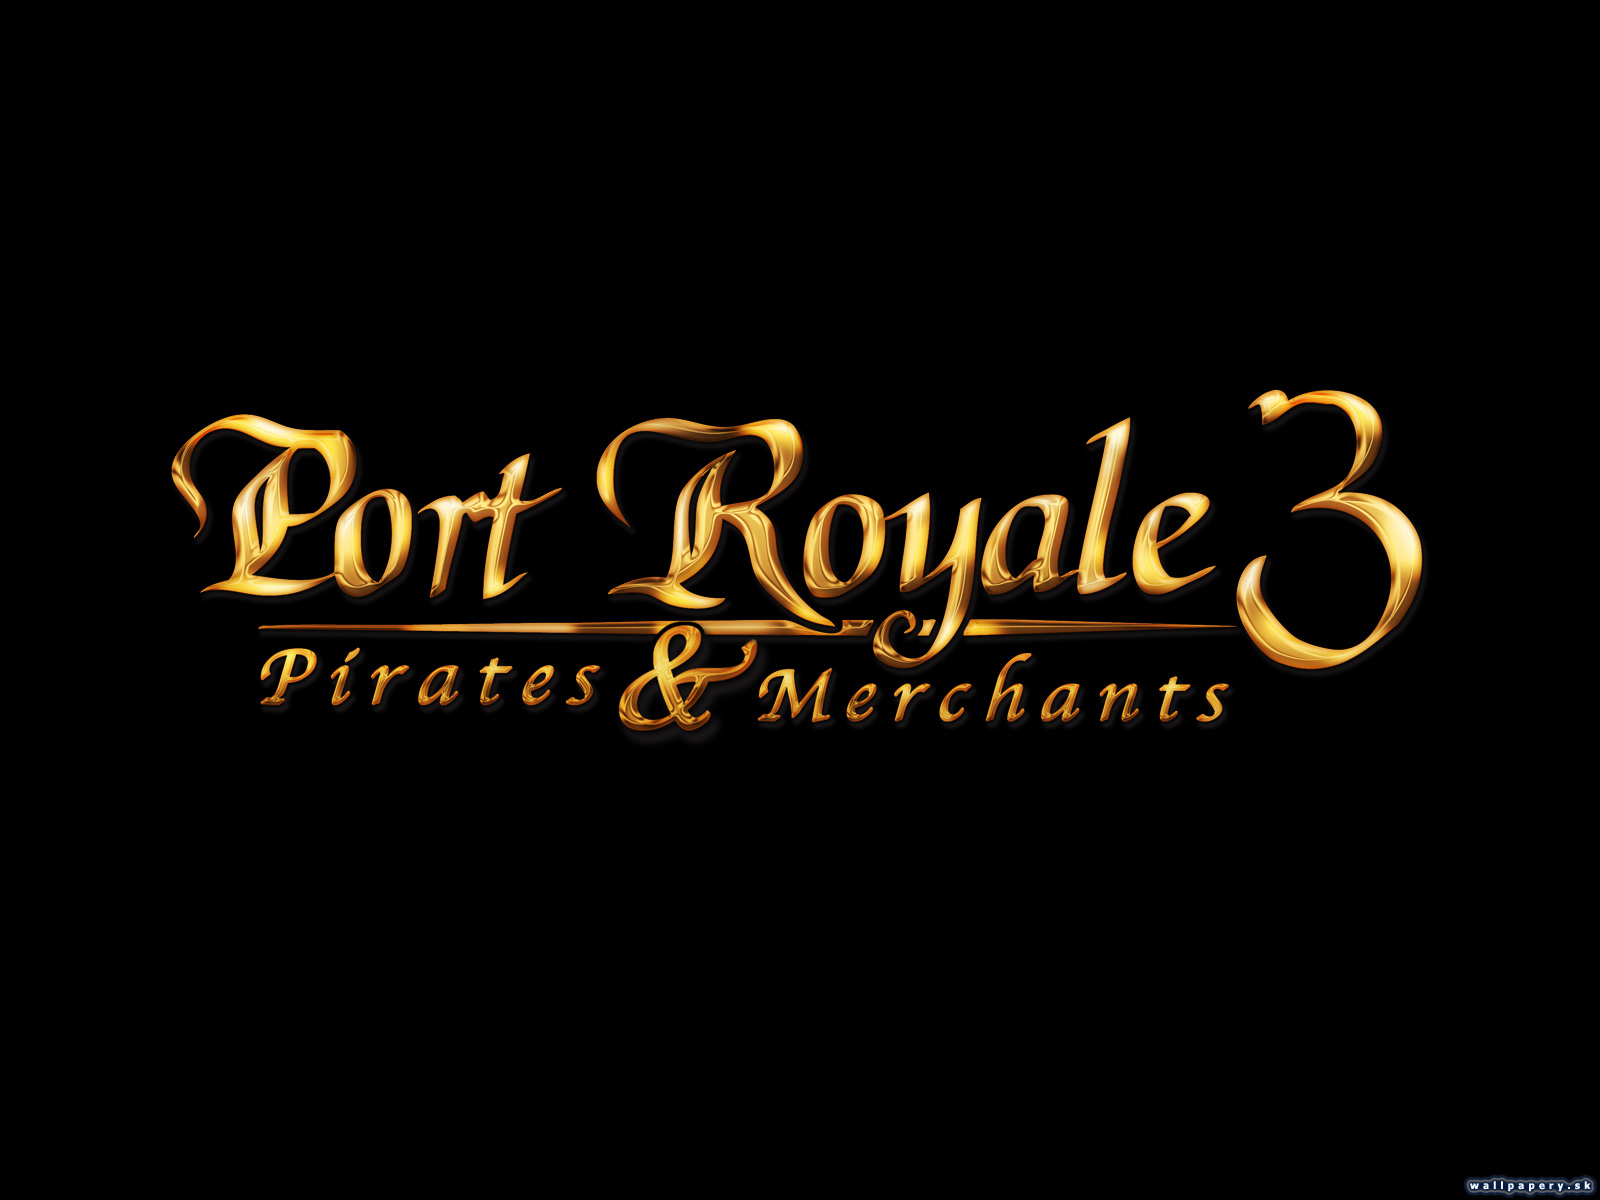 Port Royale 3: Pirates & Merchants - wallpaper 4